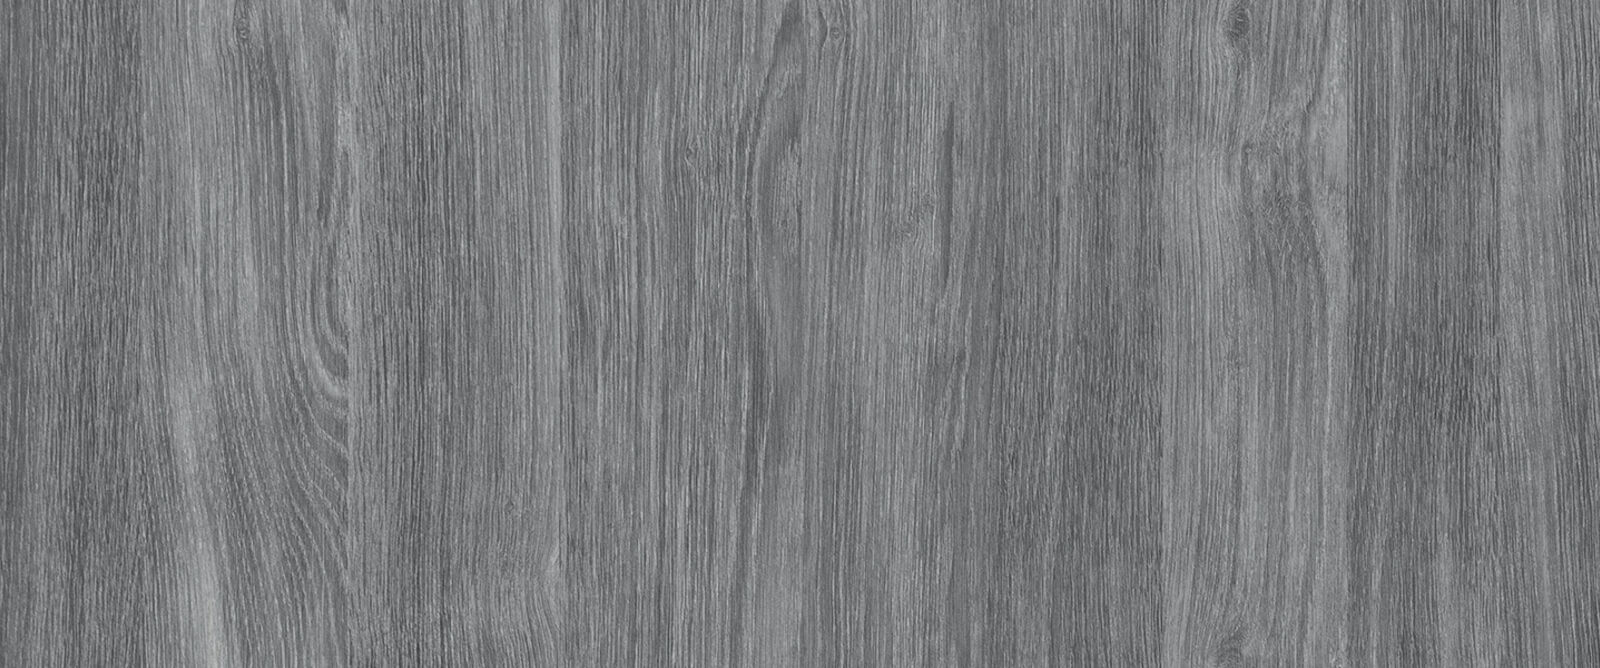 Conti® woodec Sheffield Oak concret